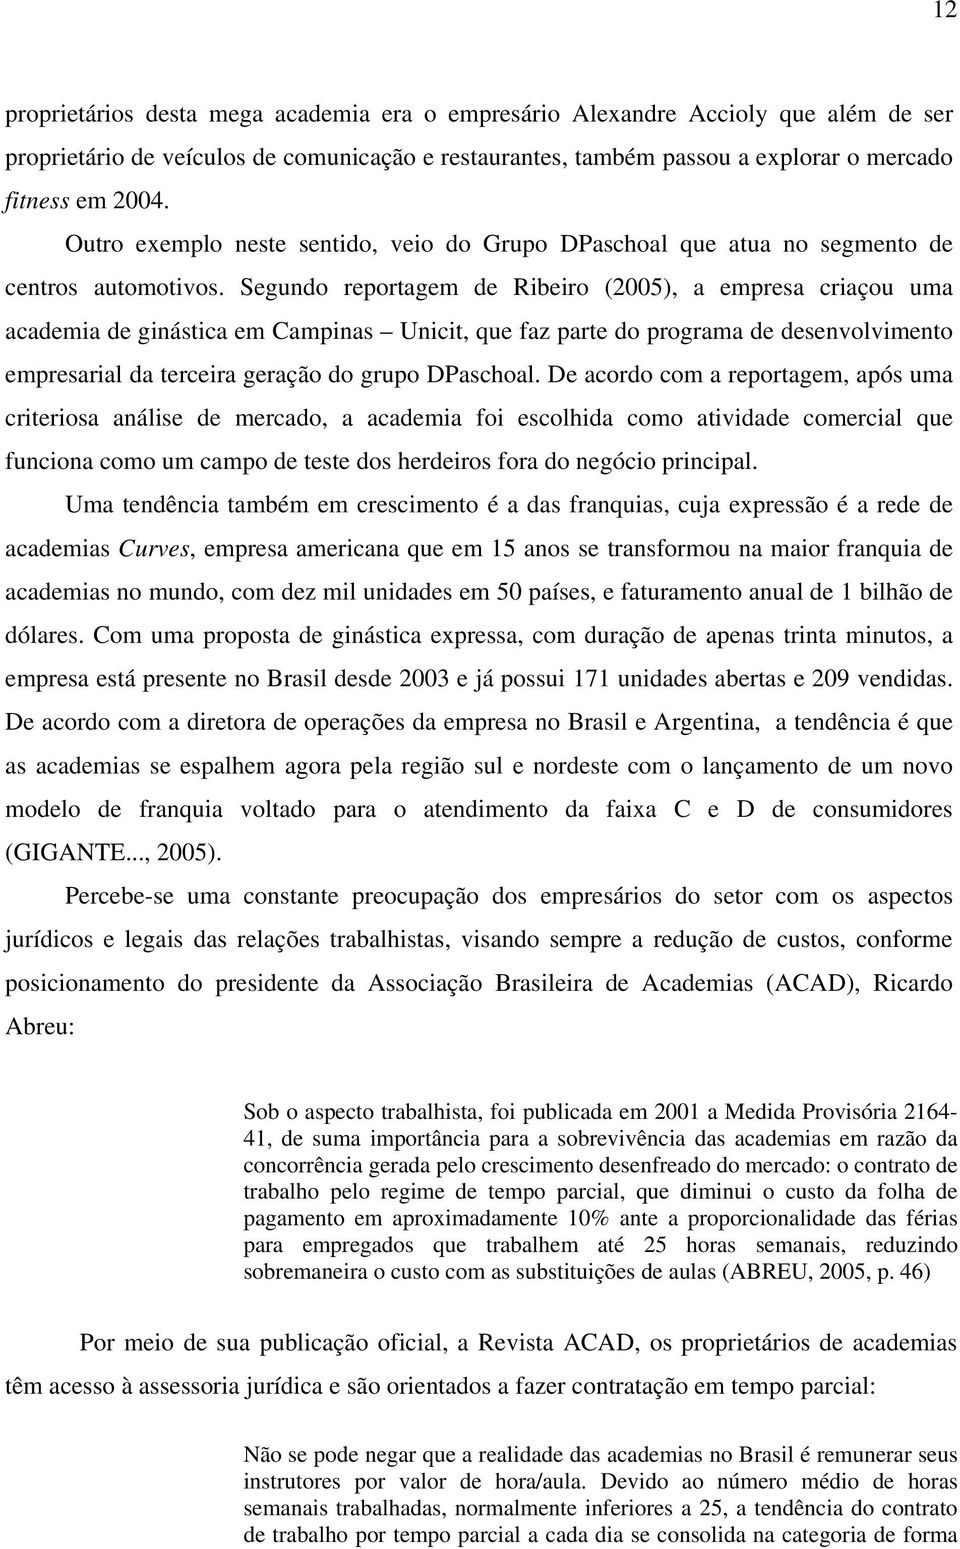 Segundo reportagem de Ribeiro (2005), a empresa criaçou uma academia de ginástica em Campinas Unicit, que faz parte do programa de desenvolvimento empresarial da terceira geração do grupo DPaschoal.